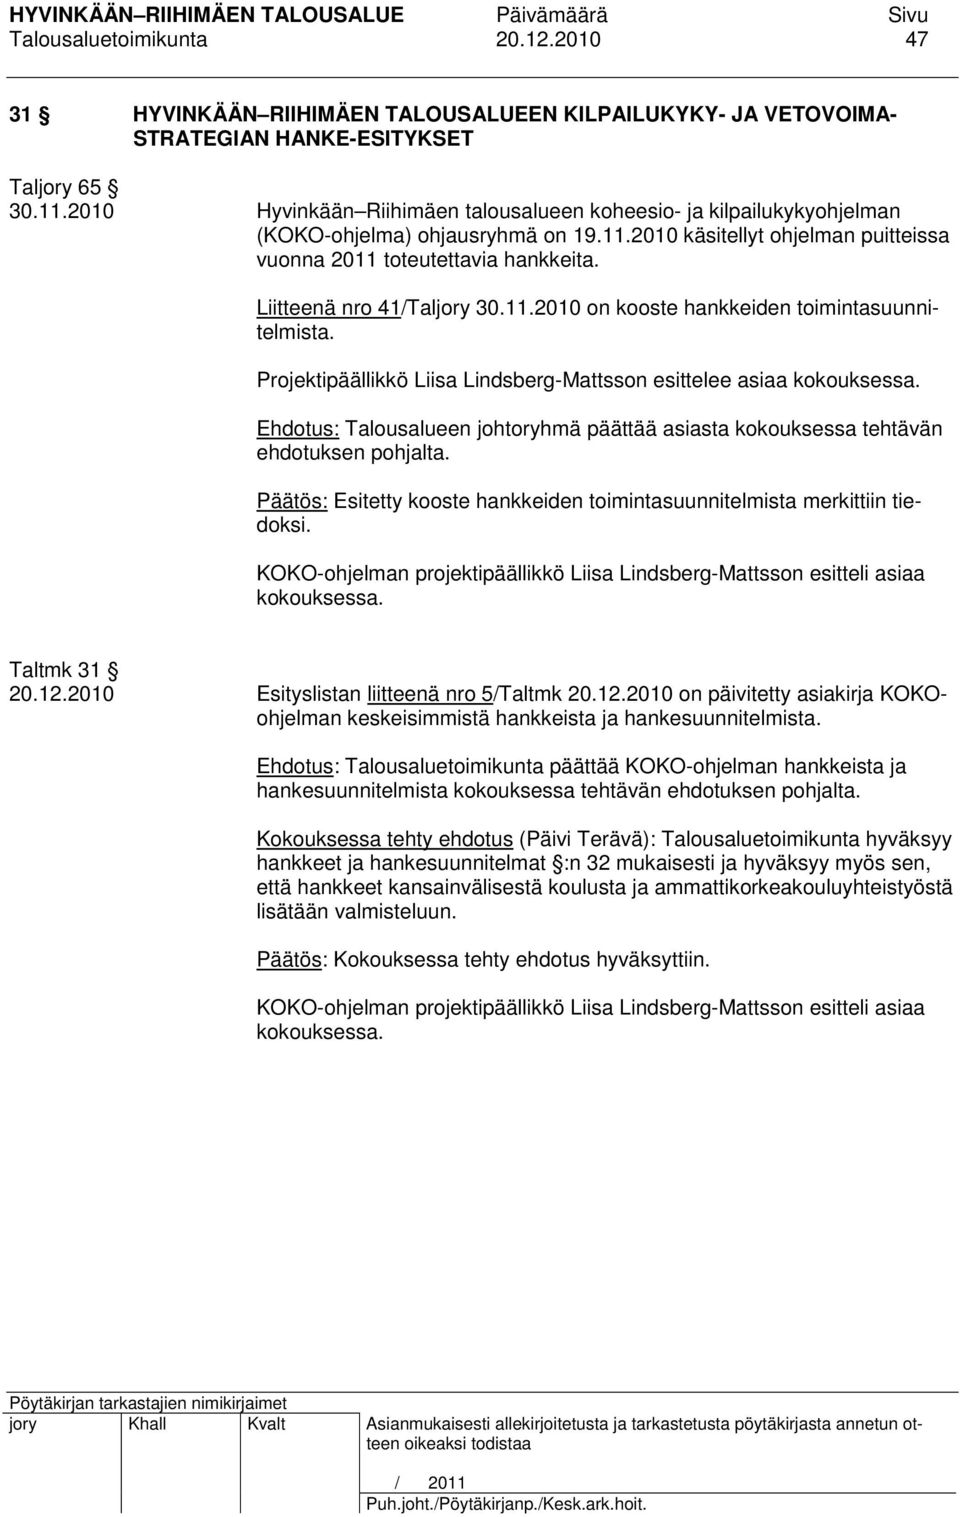 Liitteenä nro 41/Taljory 30.11.2010 on kooste hankkeiden toimintasuunnitelmista. Projektipäällikkö Liisa Lindsberg-Mattsson esittelee asiaa kokouksessa.